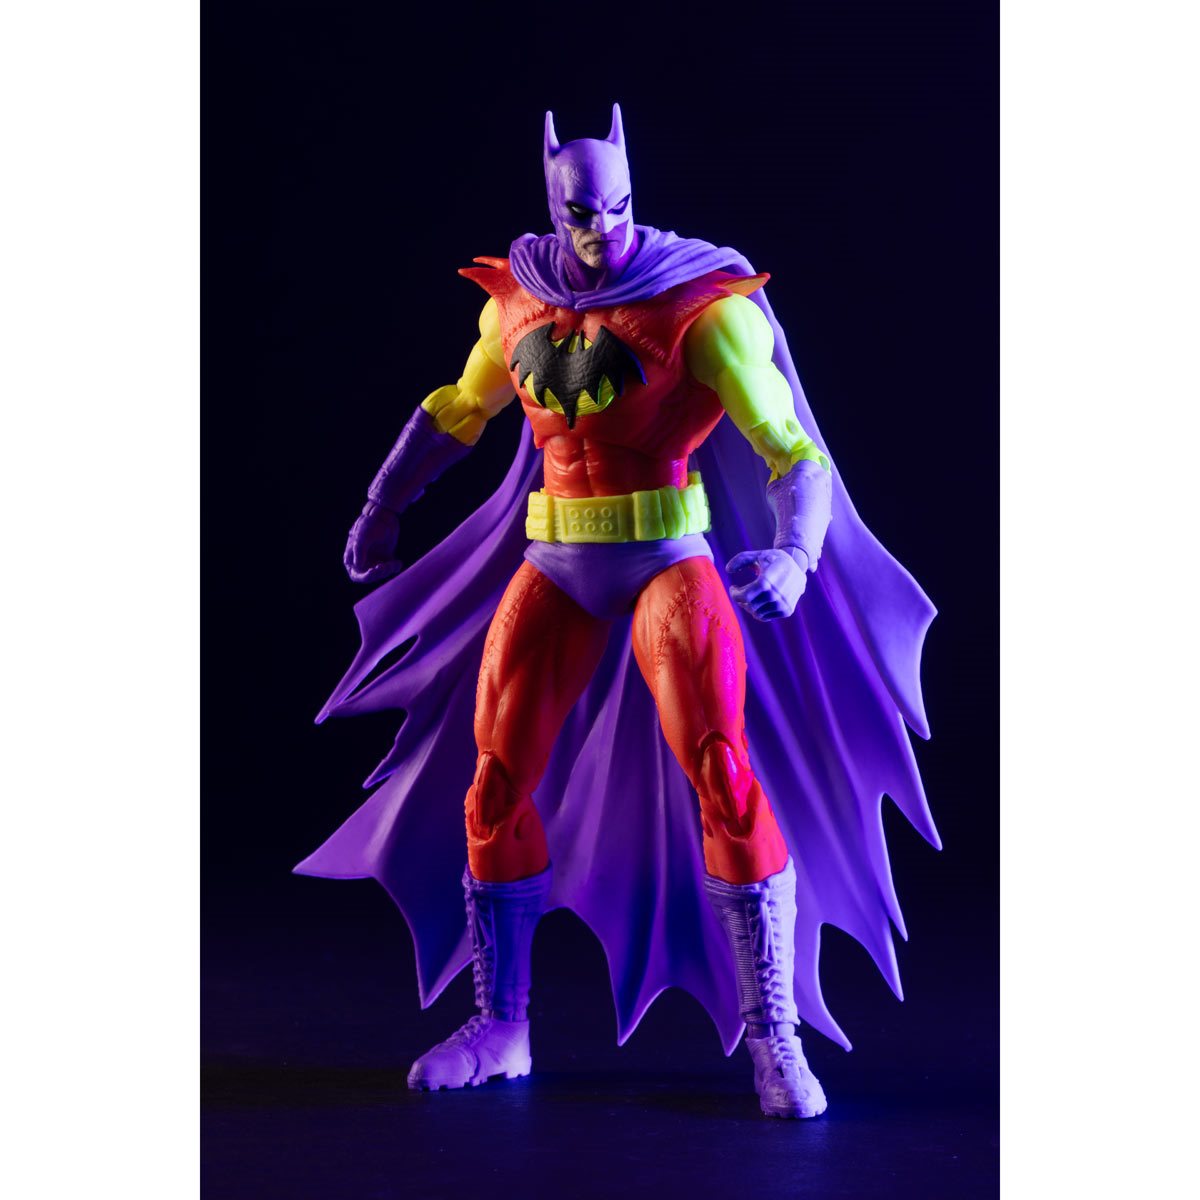 DC Multiverse Batman of Zur-En-Arh Black Light Gold Label Action Figure | Exclusive